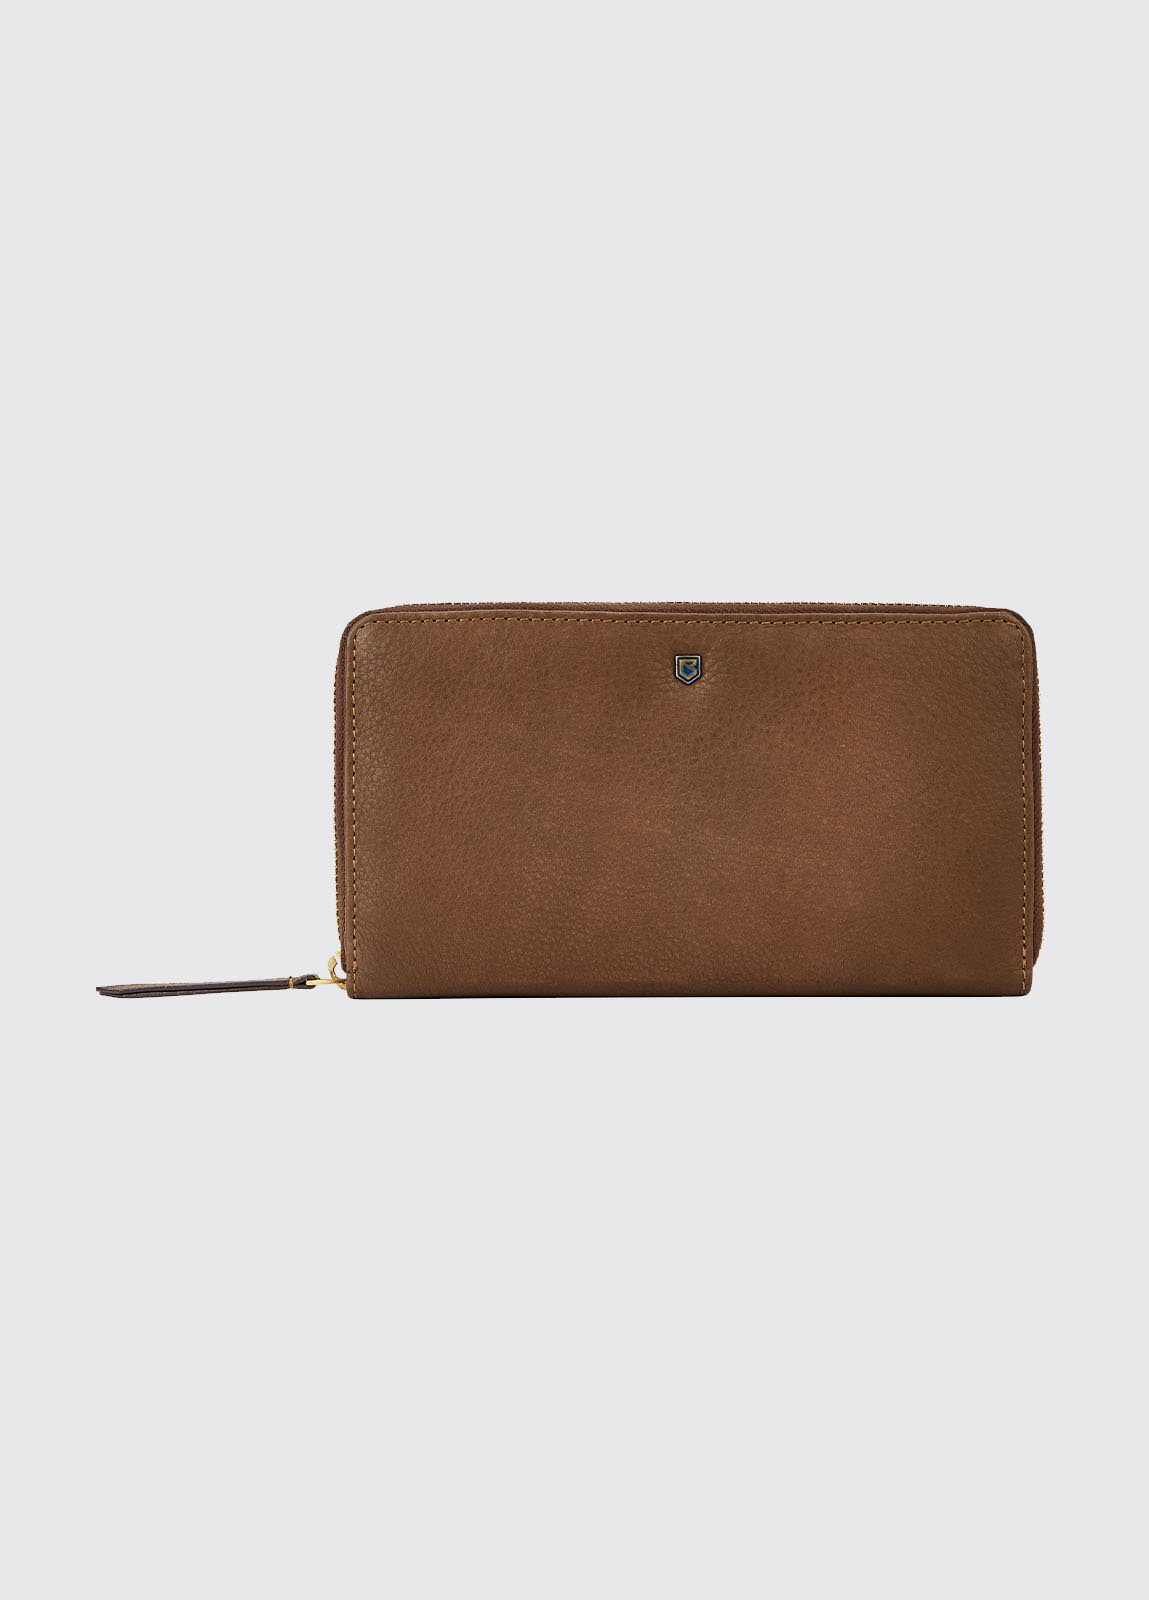 Portlick Leather Wallet - Walnut